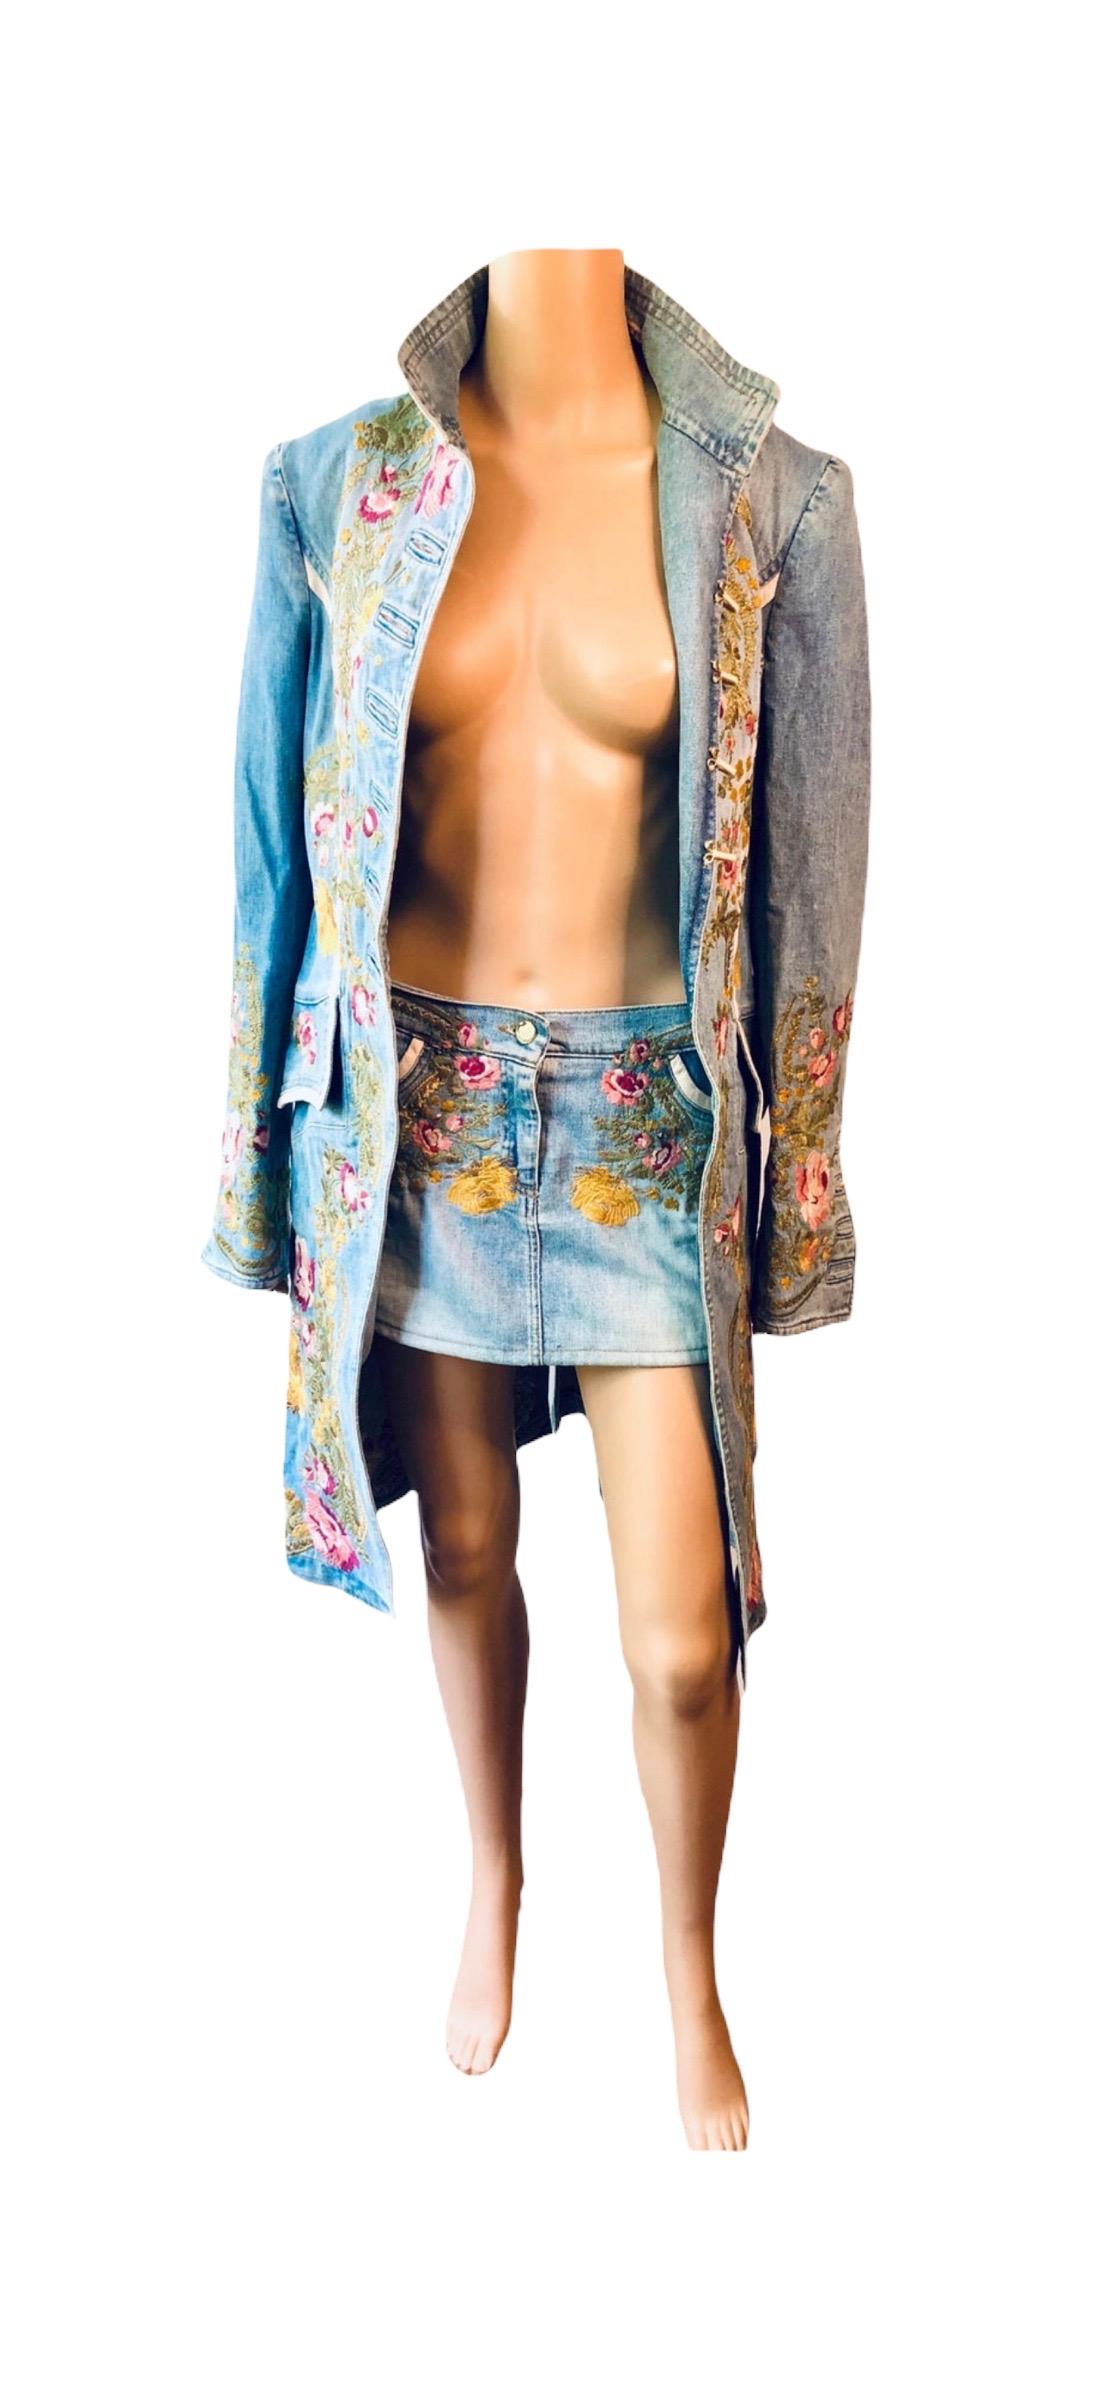 Roberto Cavalli S/S 2003 Runway Embroidered Denim Jacket Coat &Skirt 2 Piece Set 10